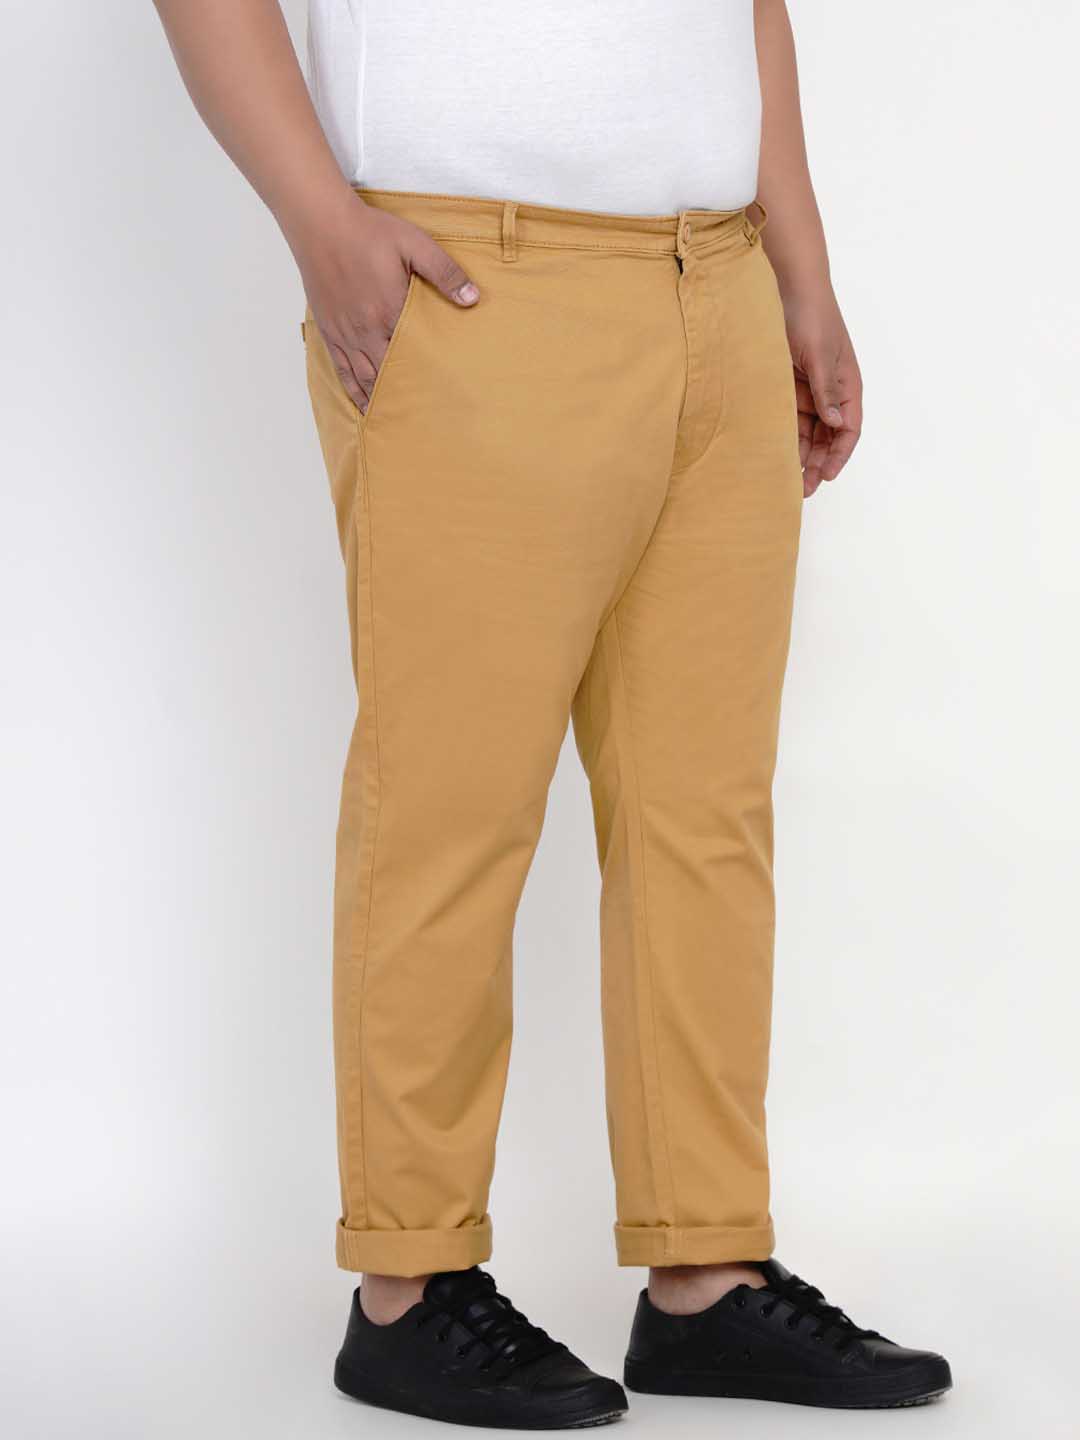 bottomwear/trousers/JPTR2195A/jptr2195a-5.jpg